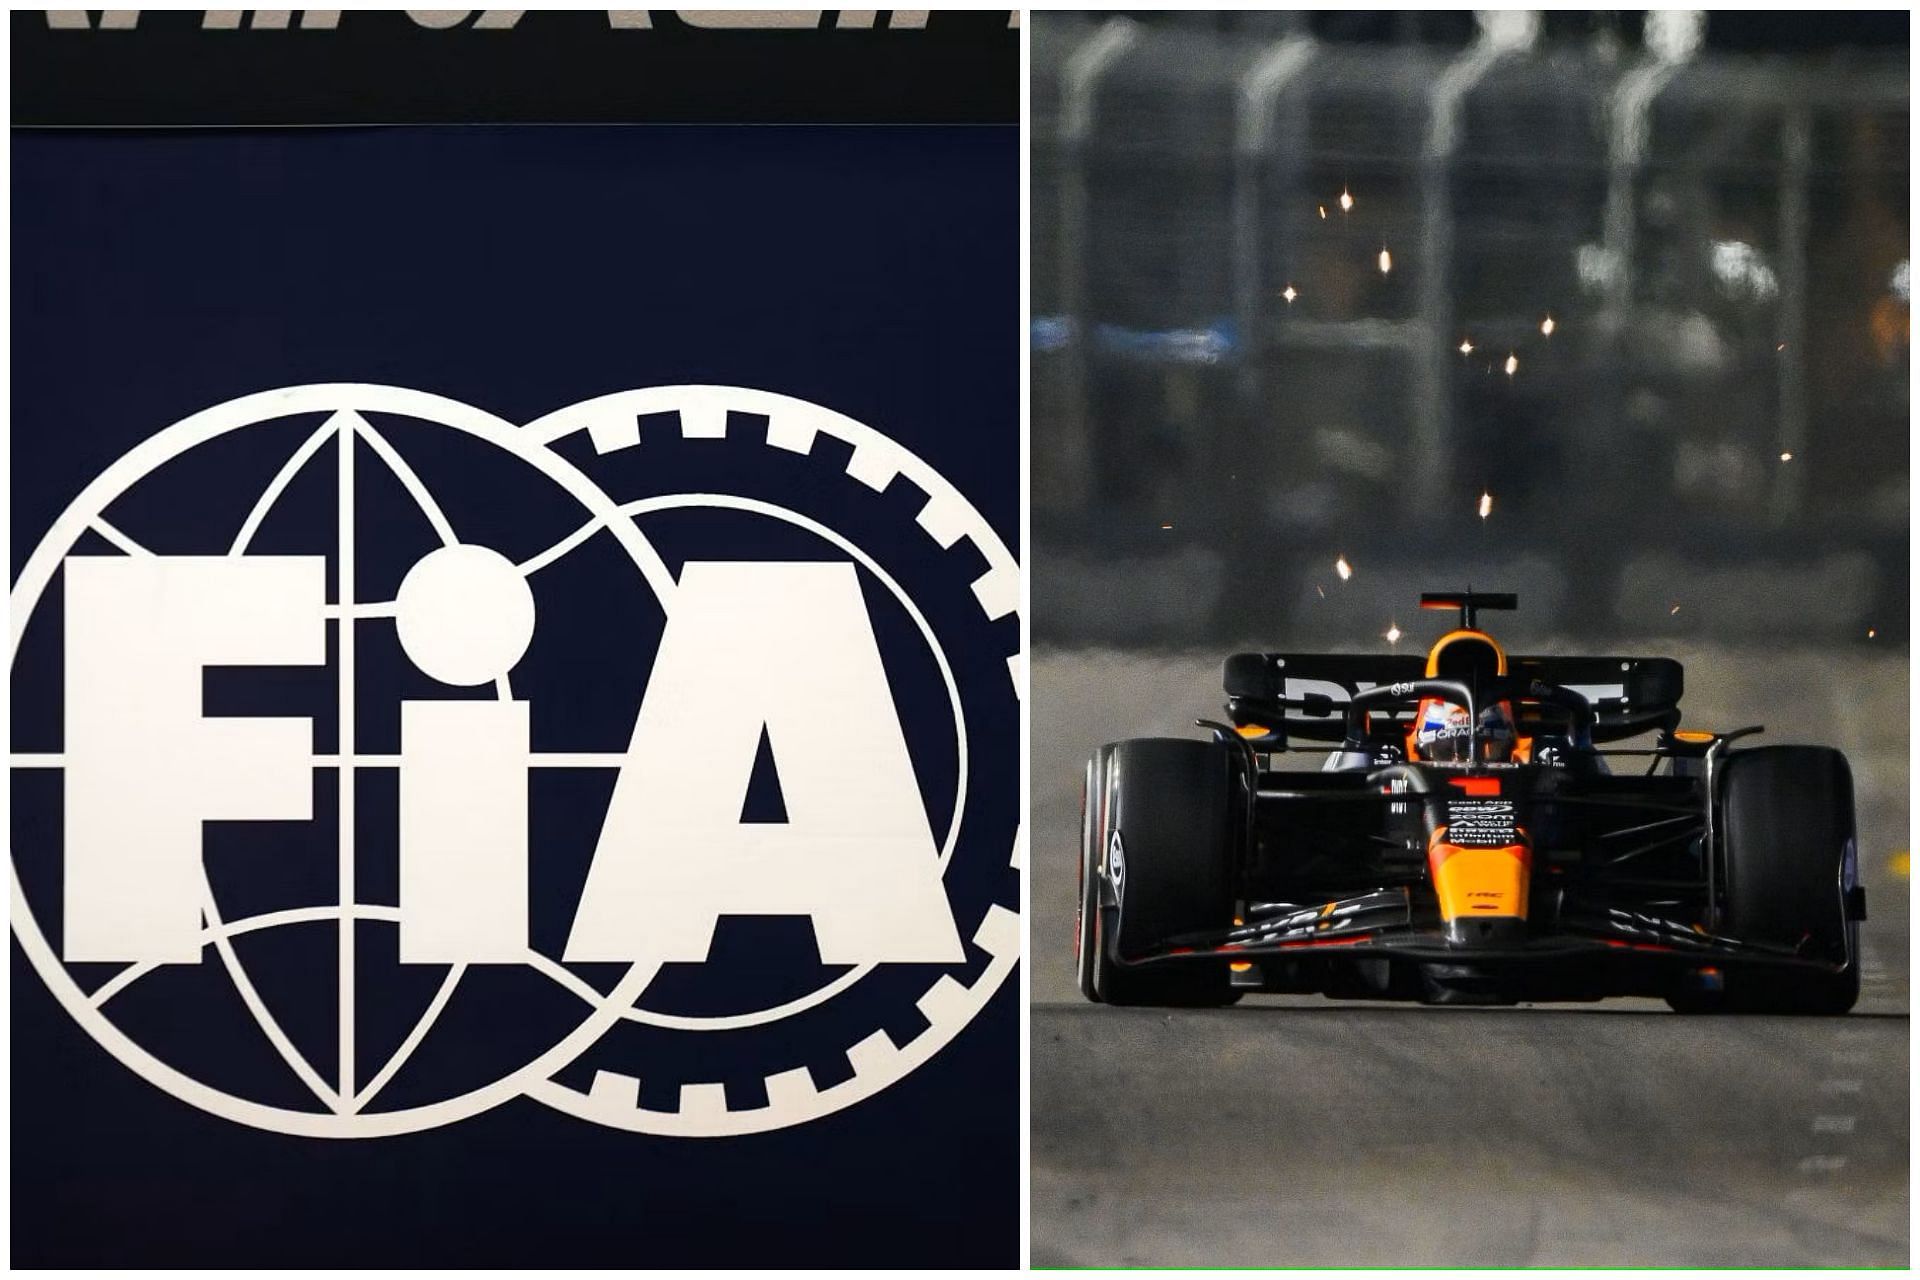 FIA logo (L) and Max Verstappen